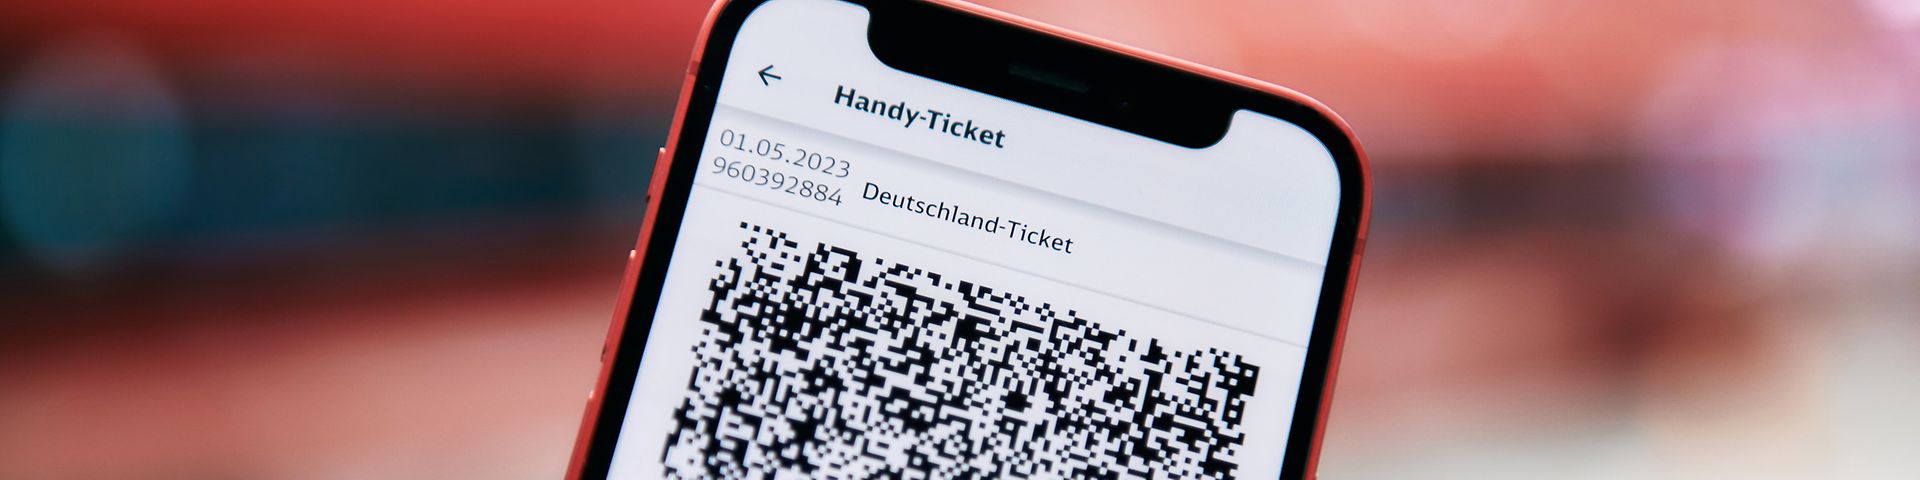 DB Deutschland-Ticket